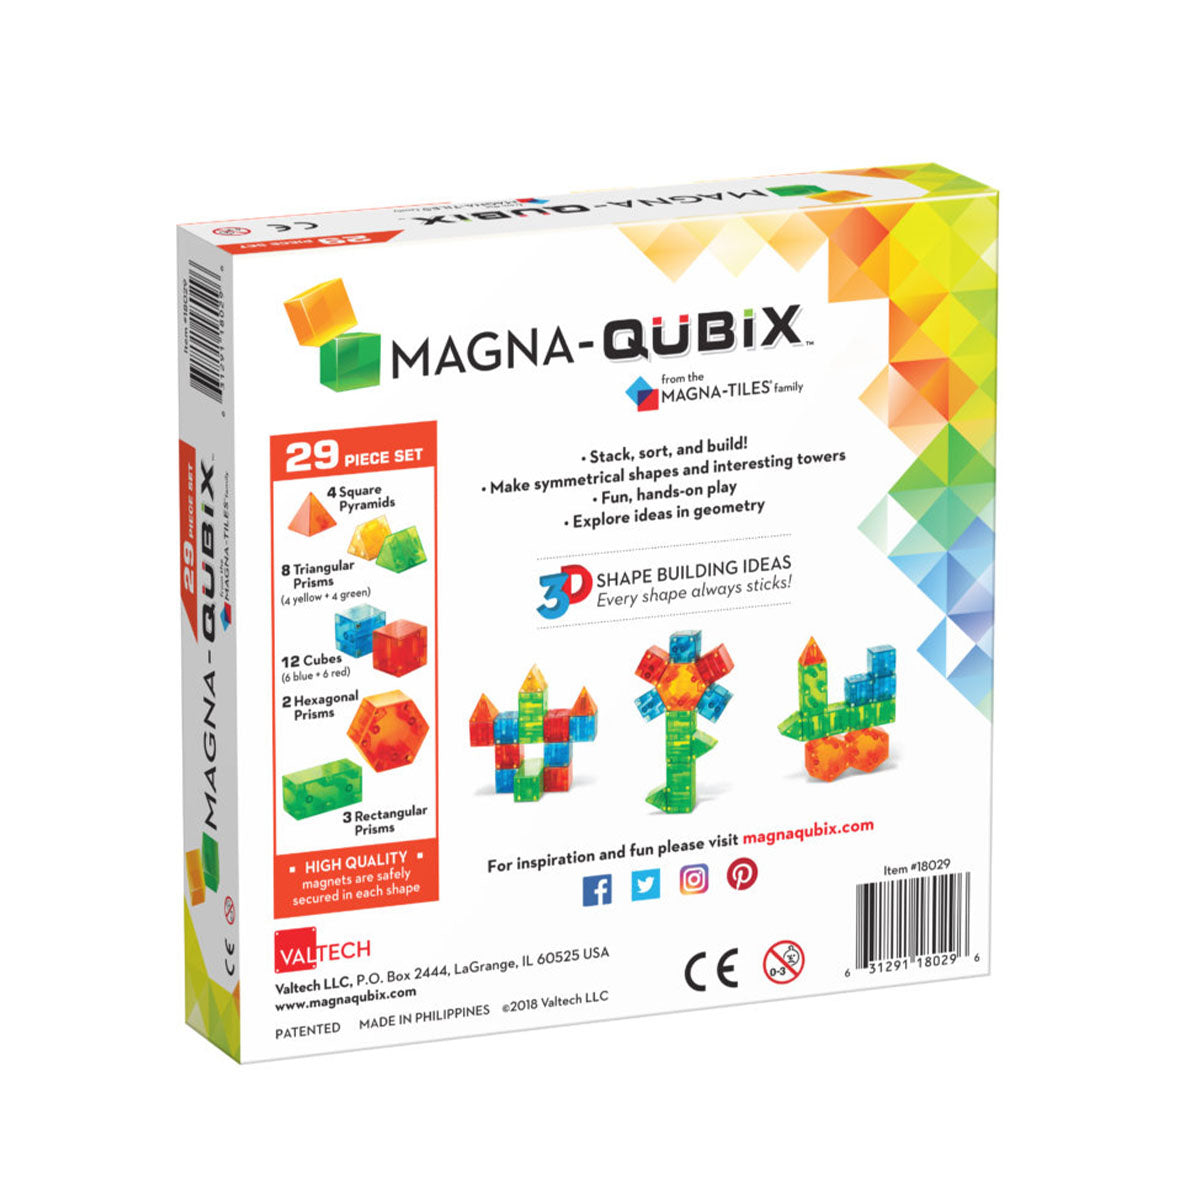 De Magna-Qubix 29 stuks set is een super leuke set met magnetische stenen. In deze set zijn de stenen niet plat, maar hebben ze een 3D vorm. In deze 29-delige set vind je kubussen, pyramides en prisma’s. VanZus.